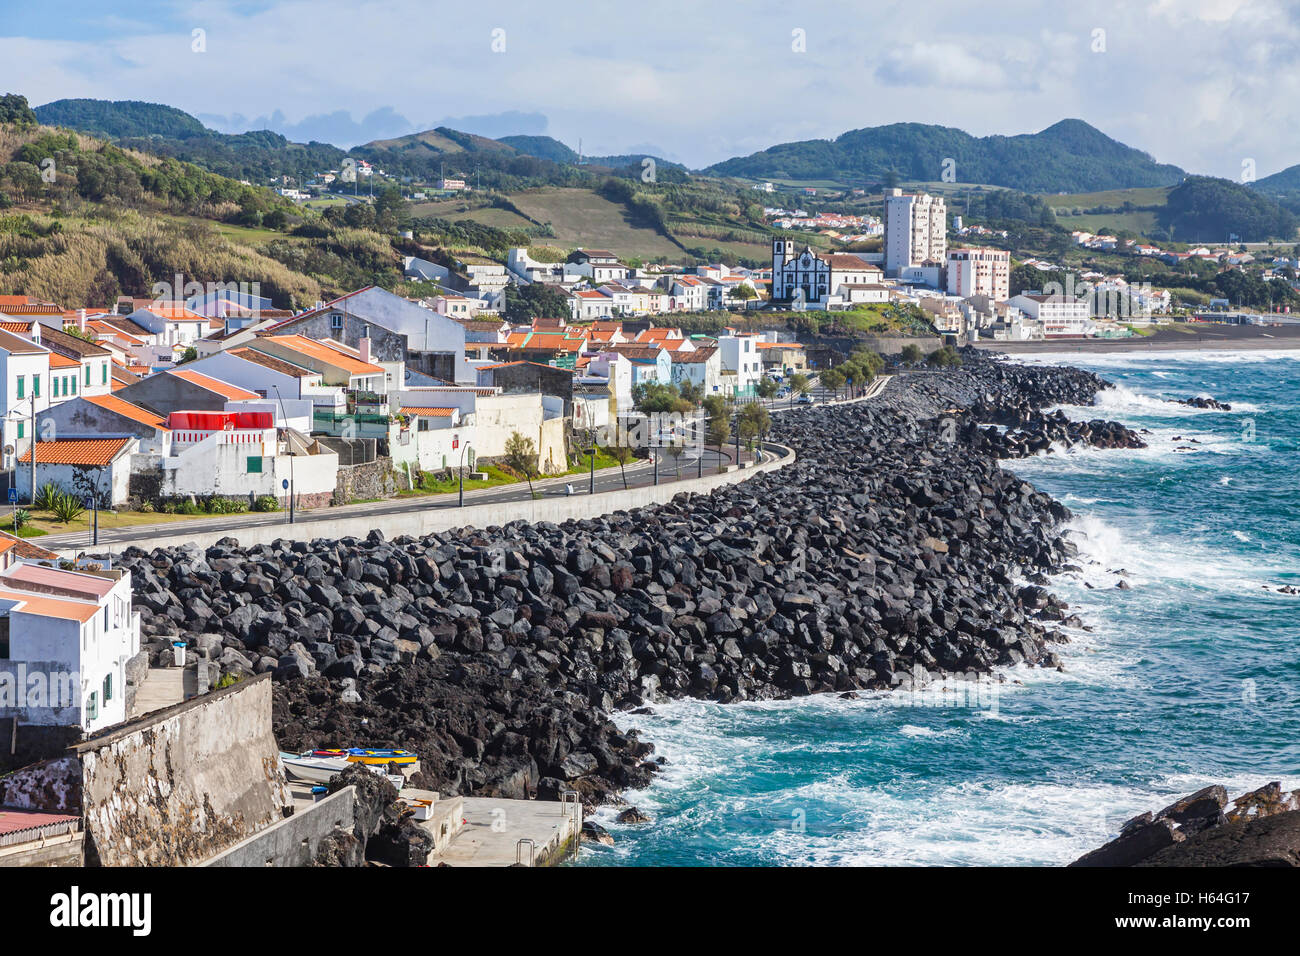 Vista de la ciudad de Ponta Delgada y la costa del océano Atlántico en la isla de Sao Miguel, Azores, Portugal Foto de stock